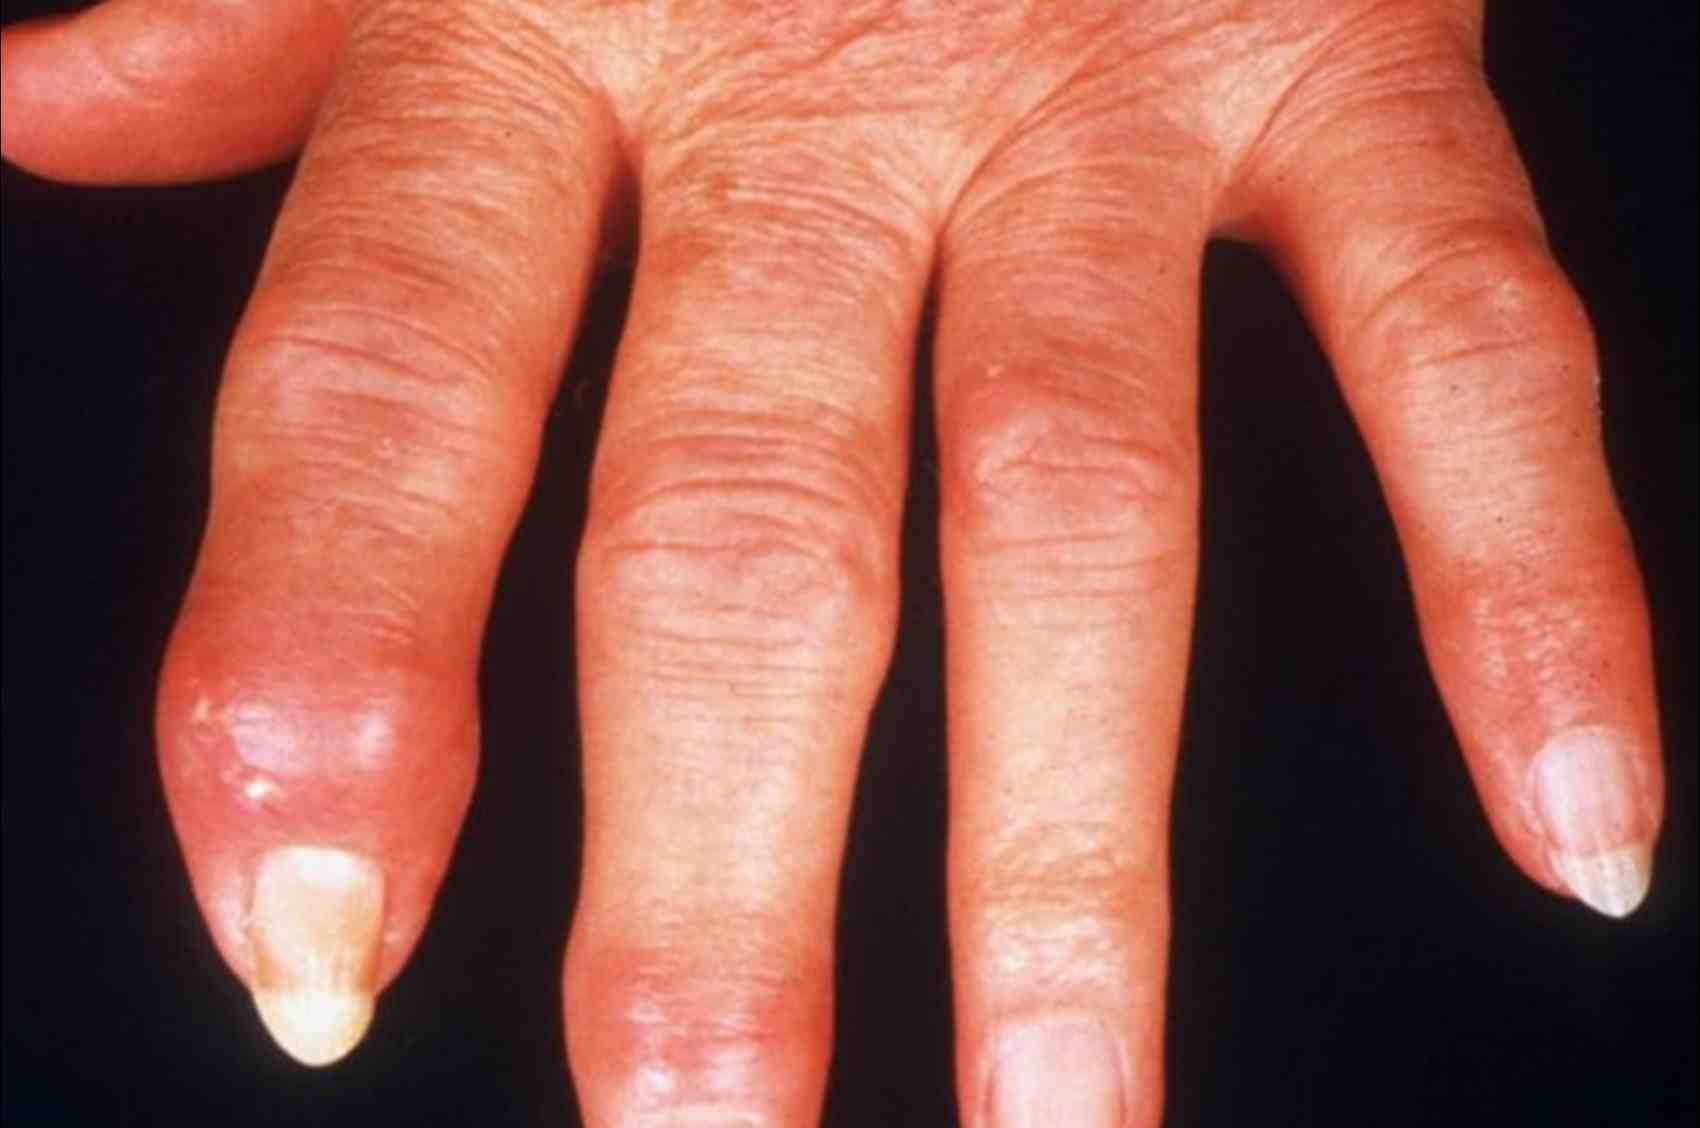 Psoriatic arthritis hands.jpg